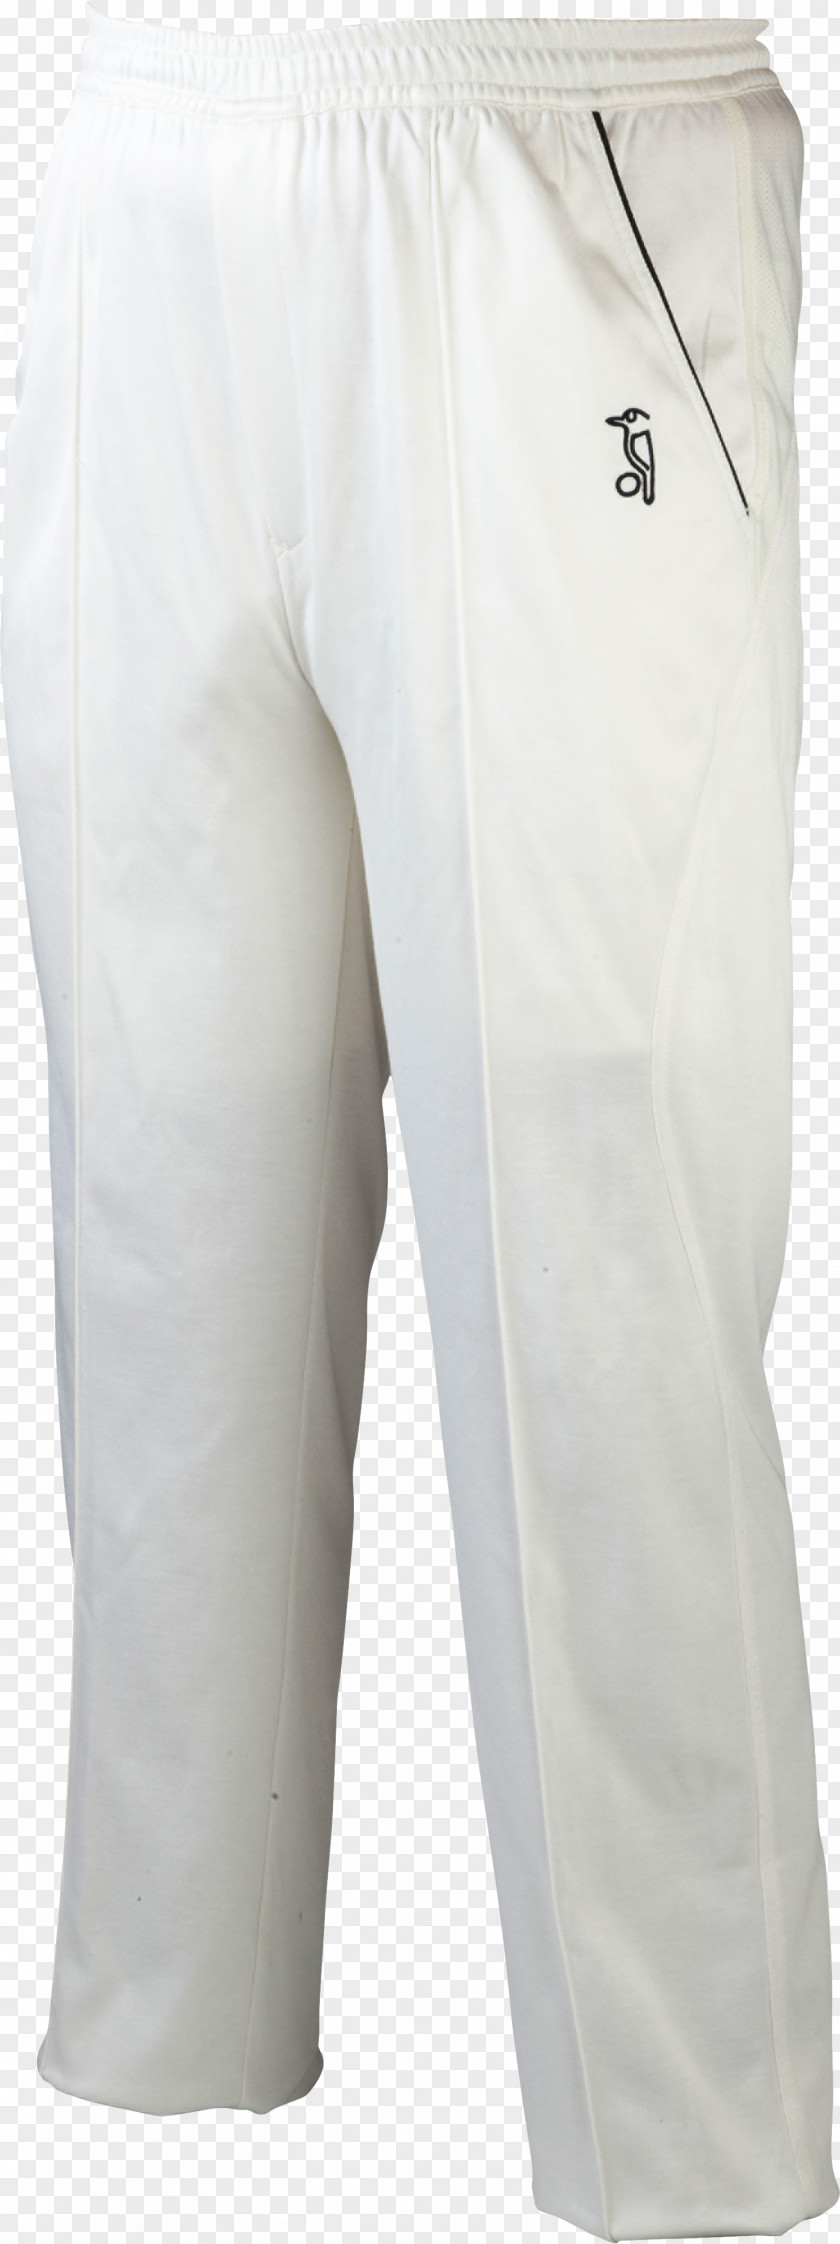 Cricket Clothing And Equipment Bermuda Shorts Pants PNG